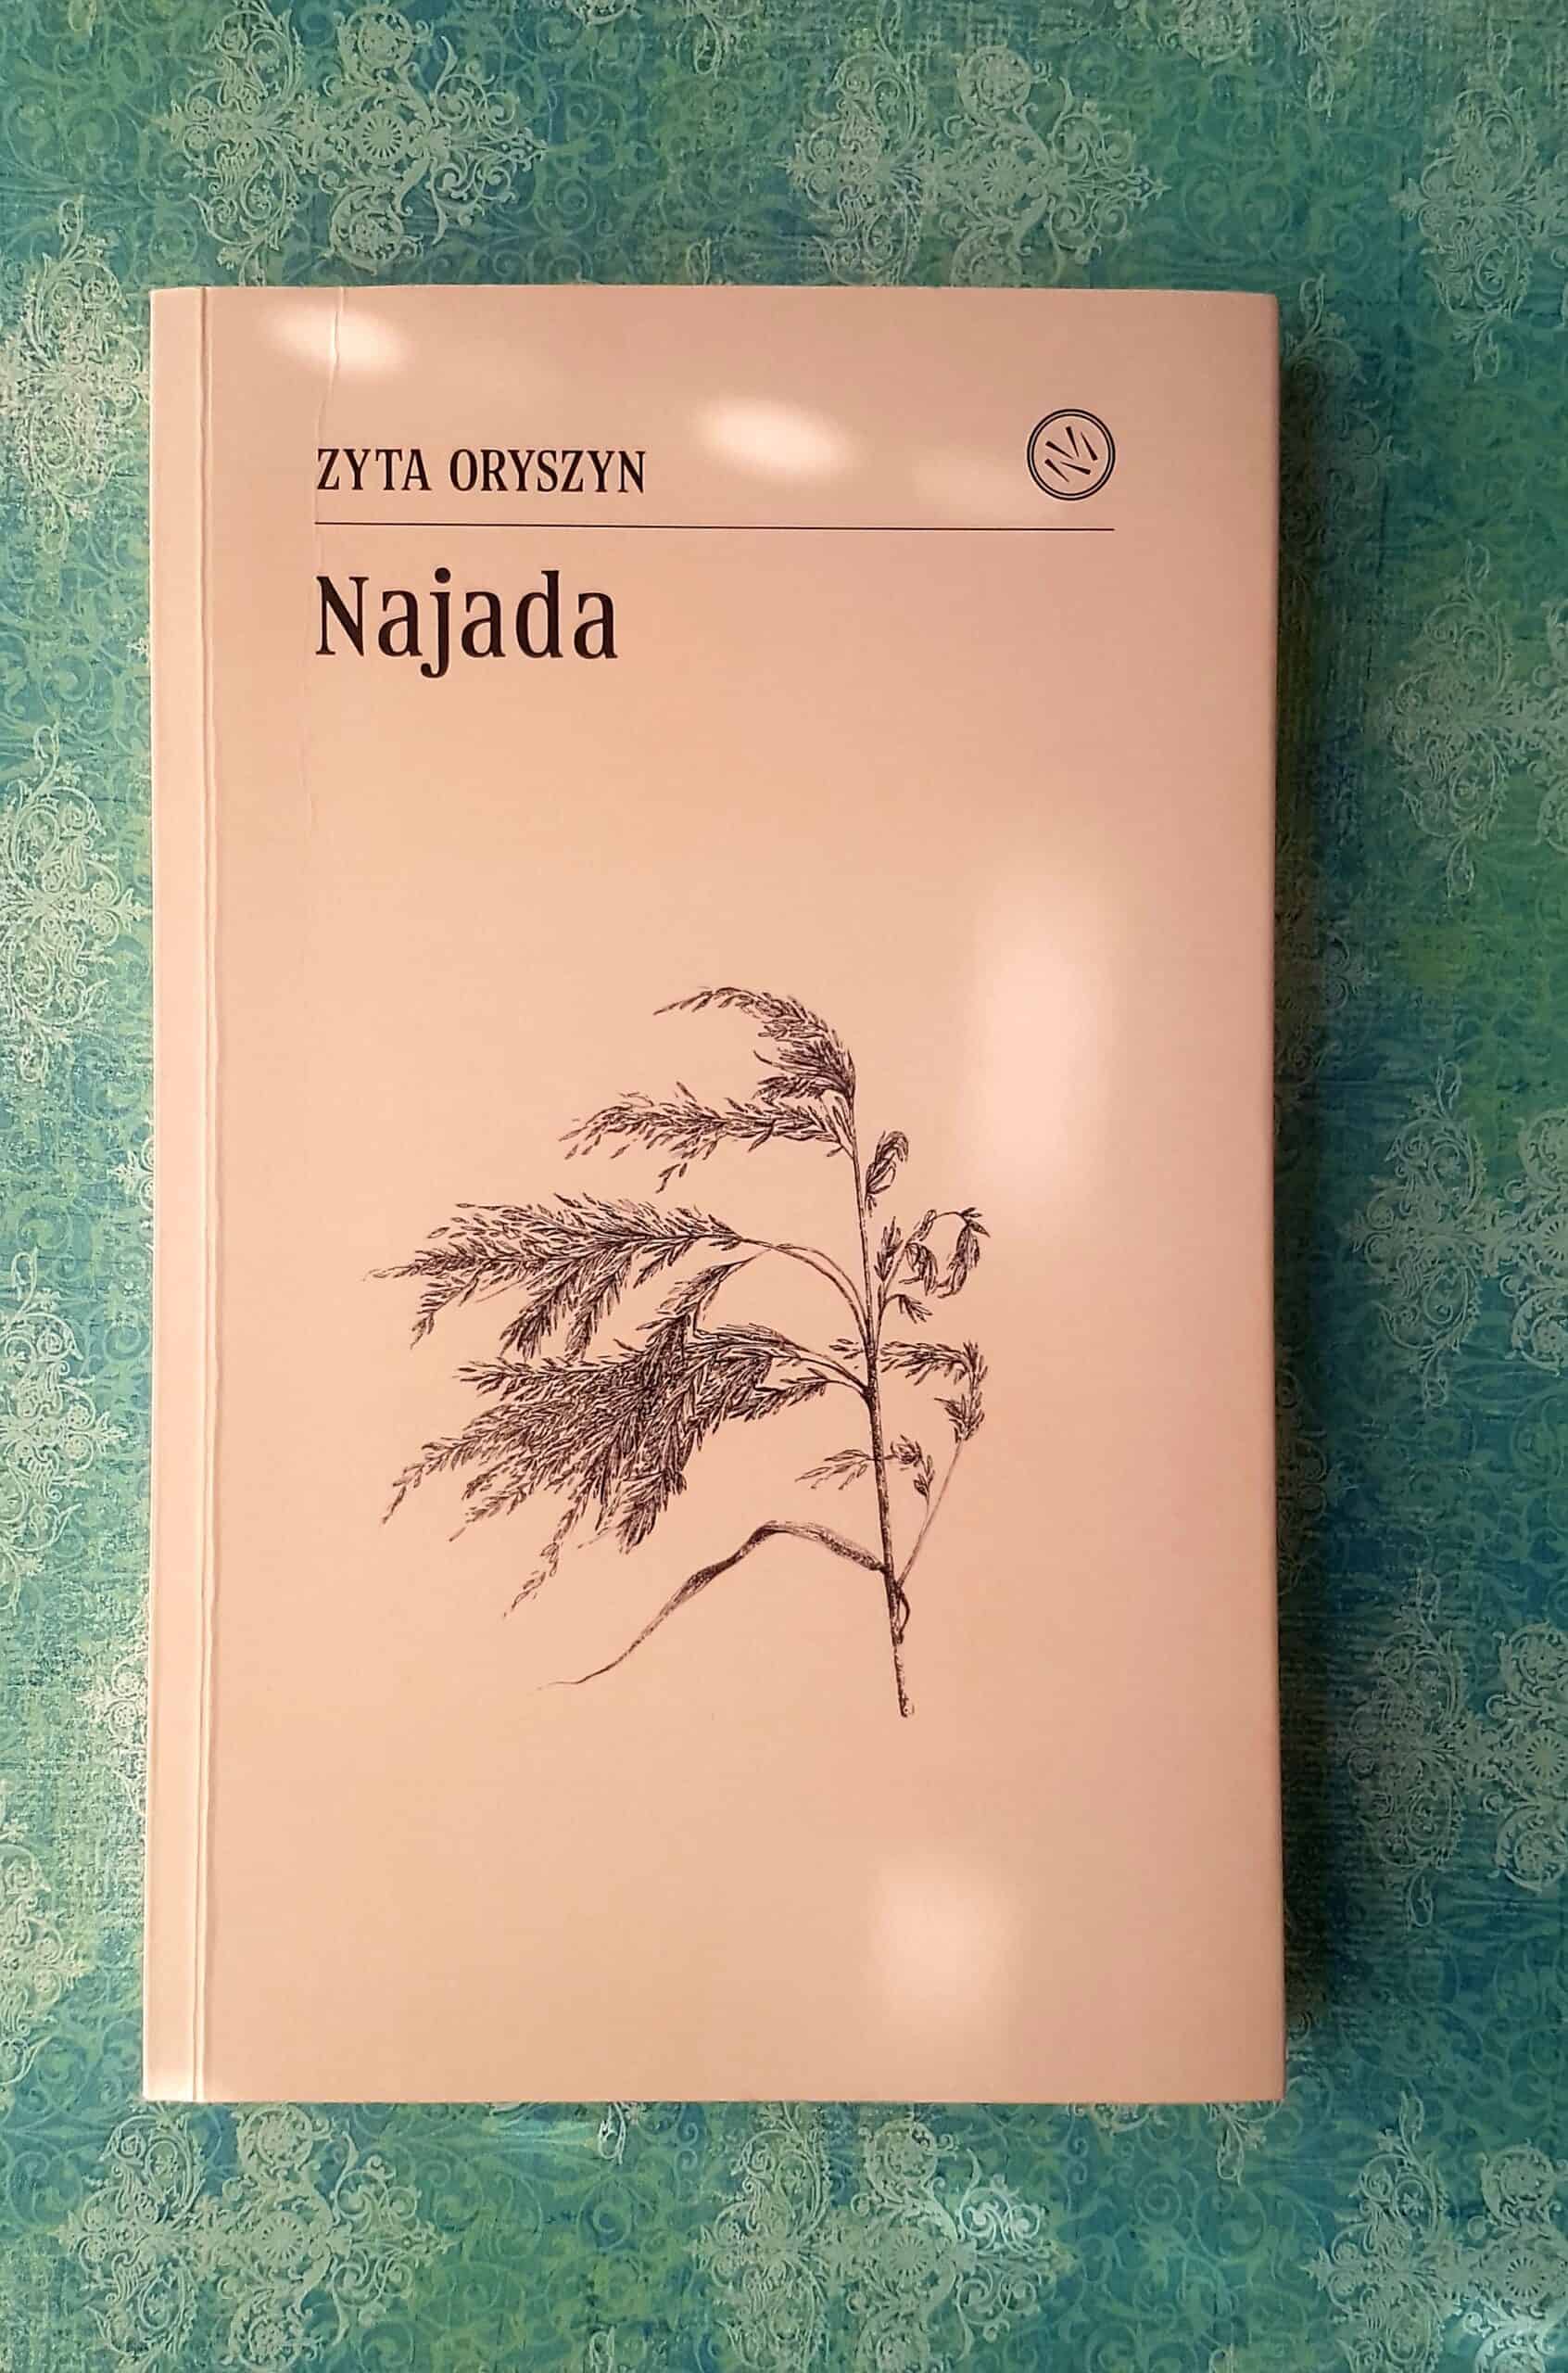 okładka książki Najada, na zielonym tle, z promykami słońca jak odbicia wody